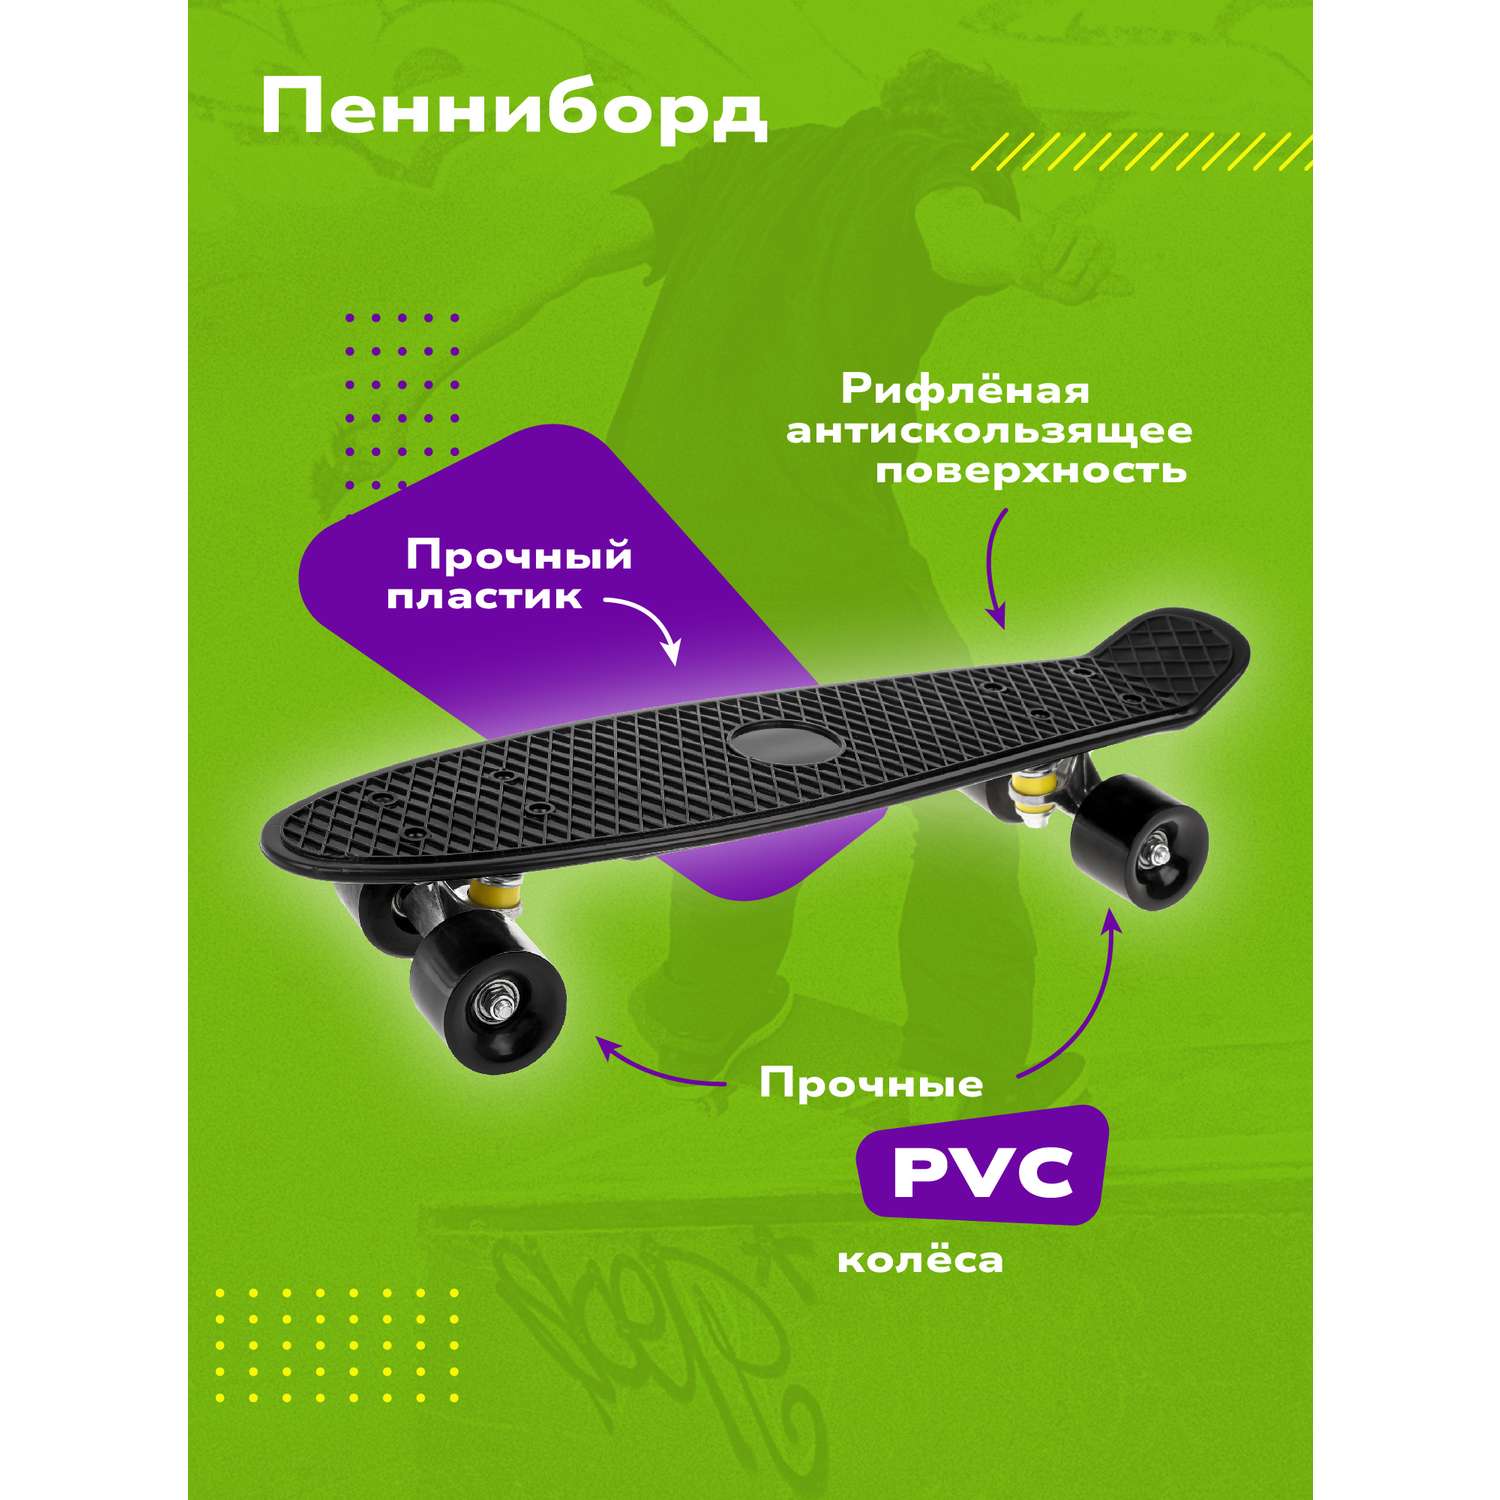 Скейтборд Наша Игрушка пенниборд пластик 56*14 см колеса PVC черный - фото 1